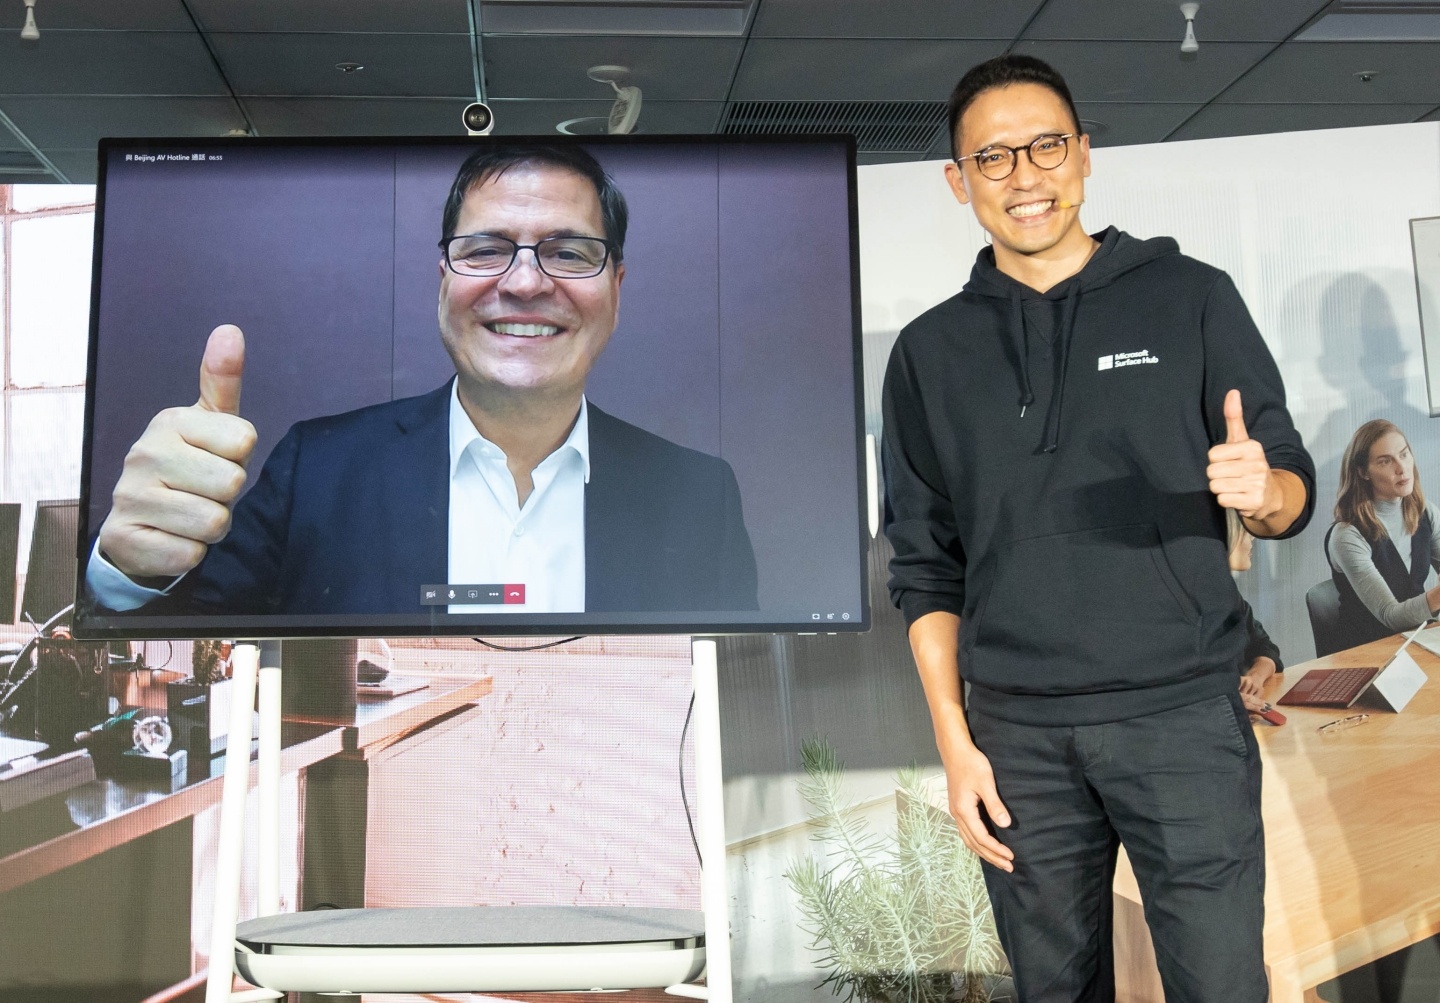 出門｜提升遠距會議的便利性『 Surface Hub 2S 』邊視訊還能共同編輯文件